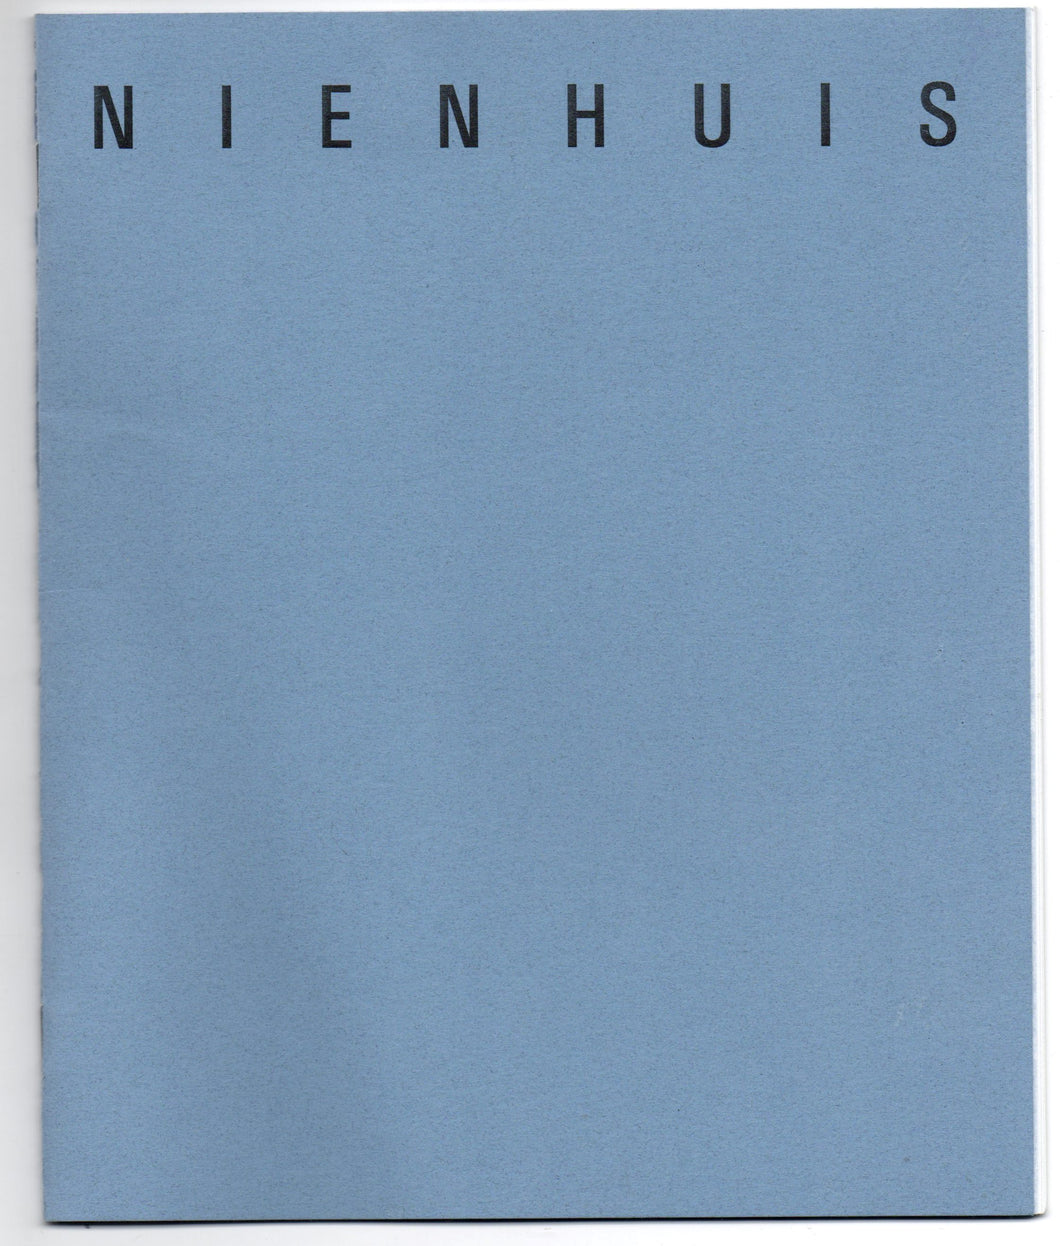 Elisabeth Nienhuis: "Palimpsest:" An Exhibition of Sculpture